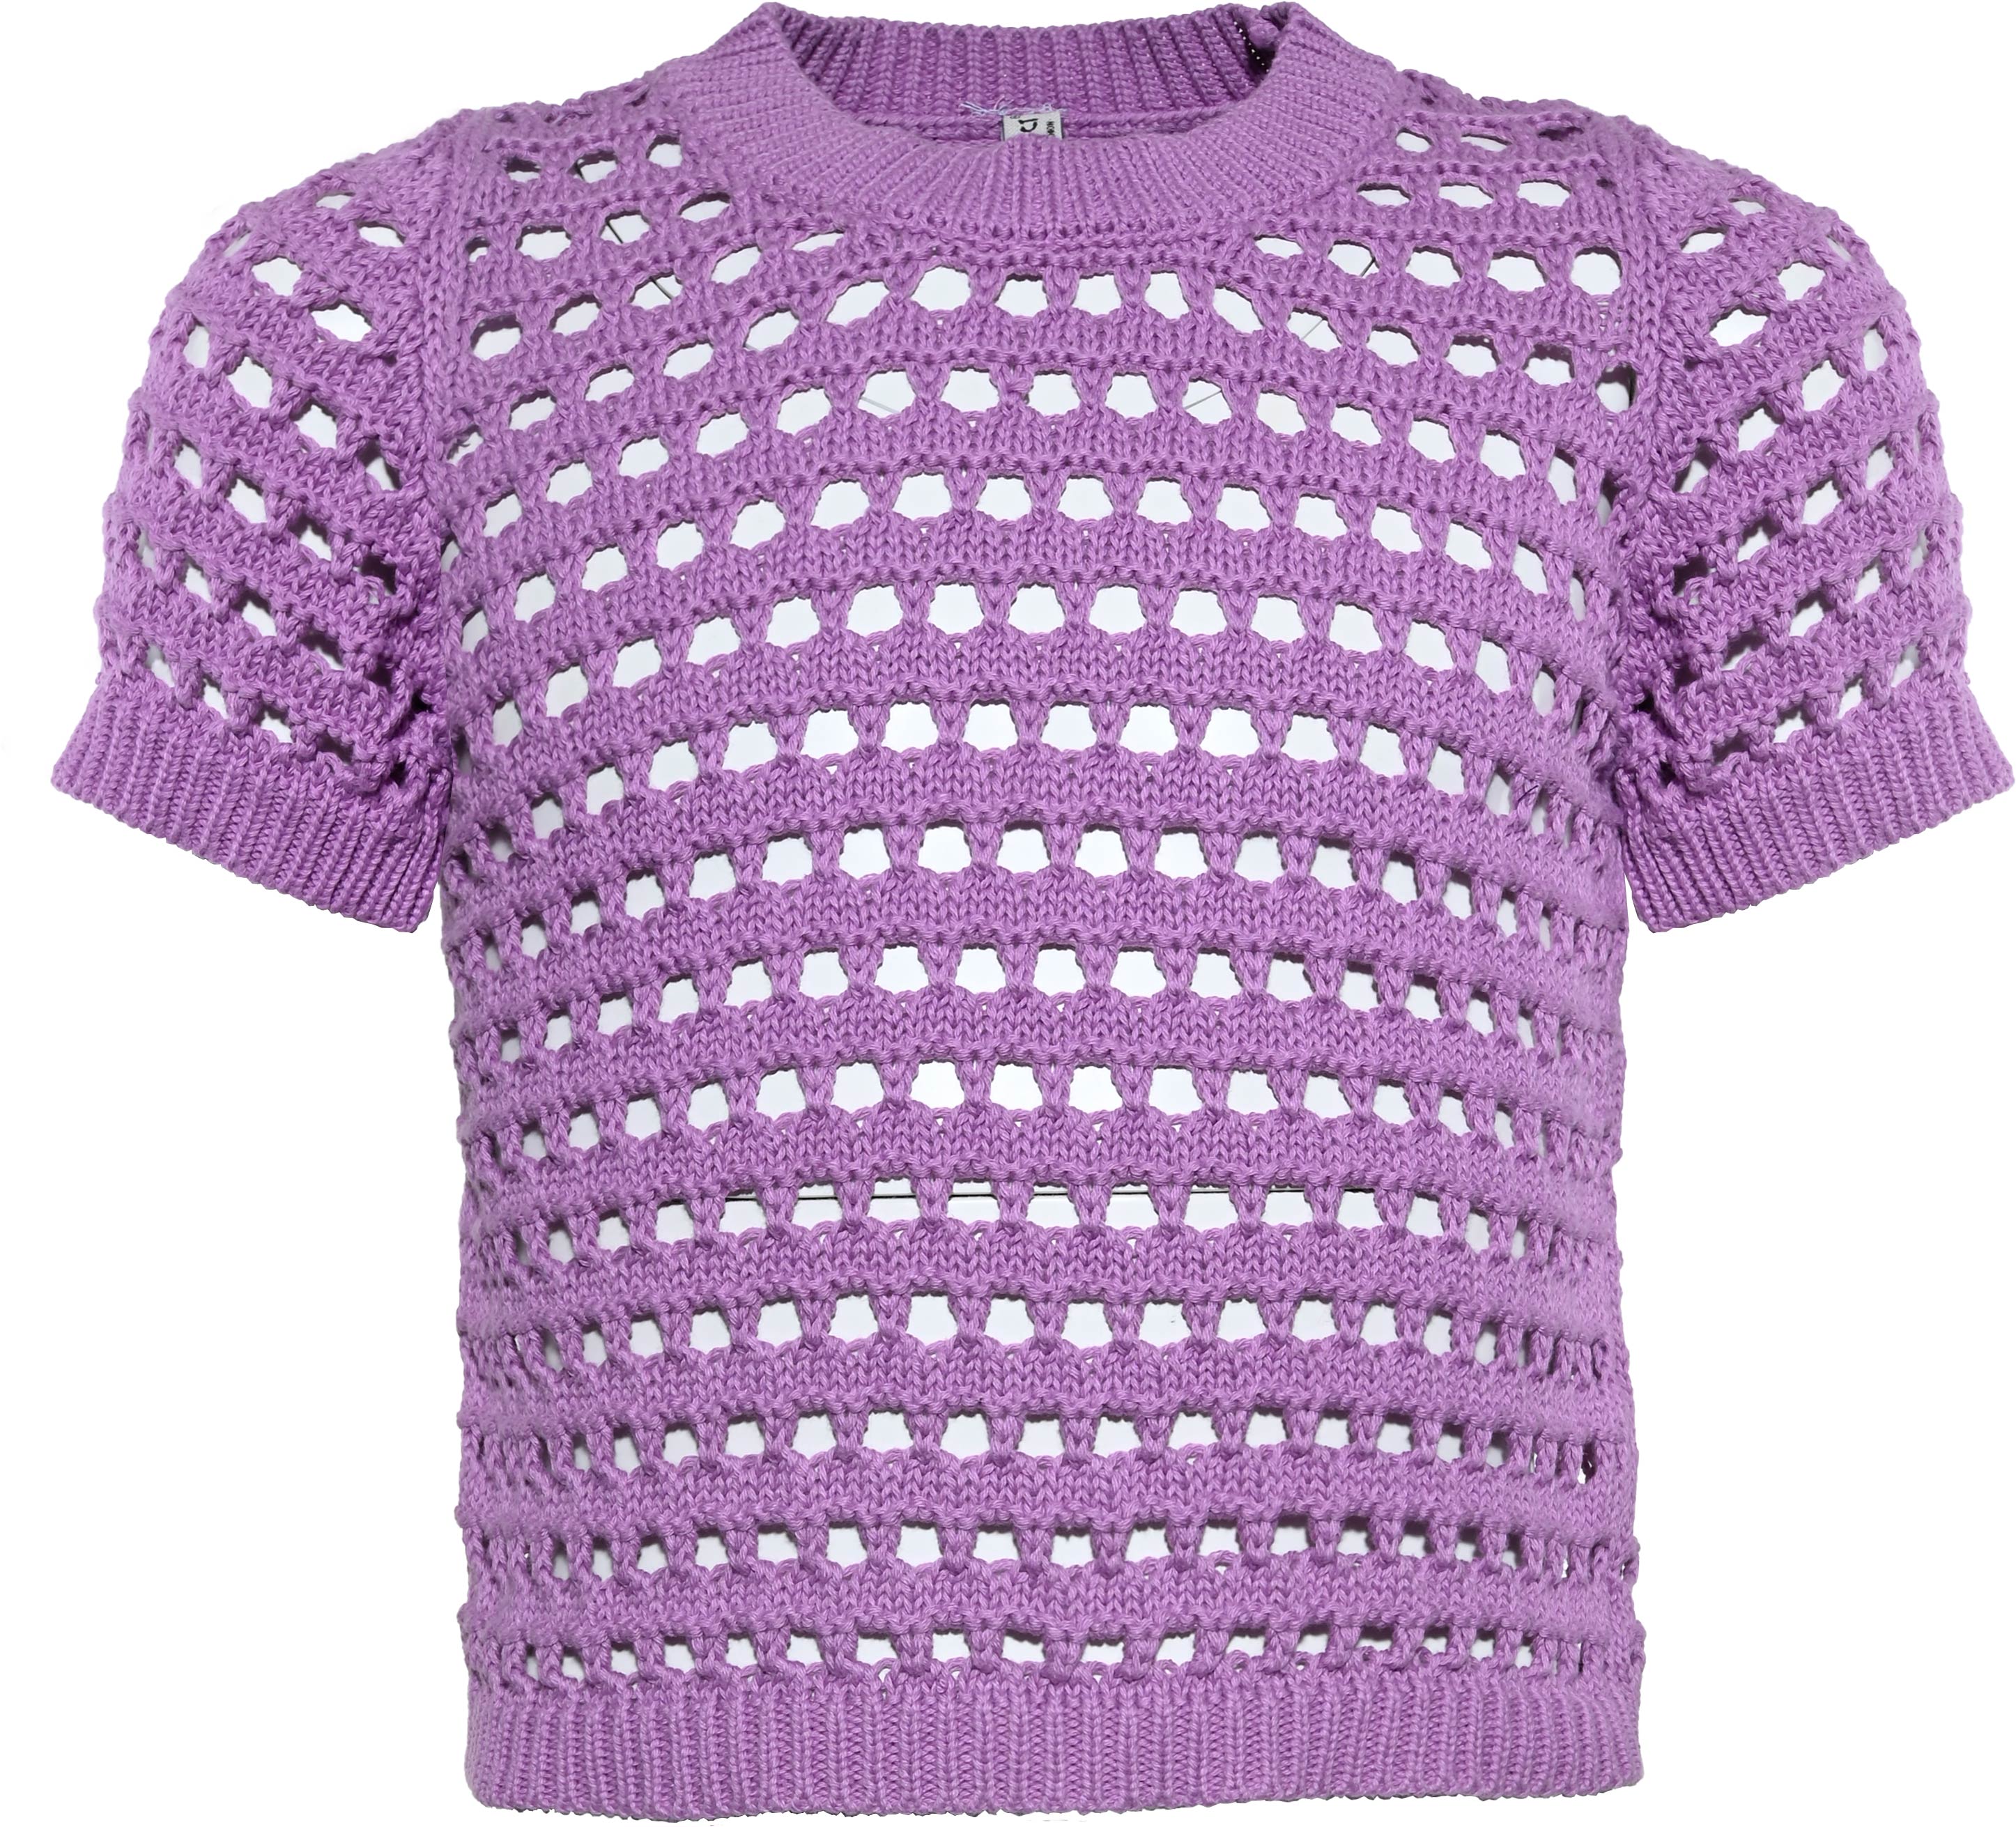 5951-Girls Knit Shirt